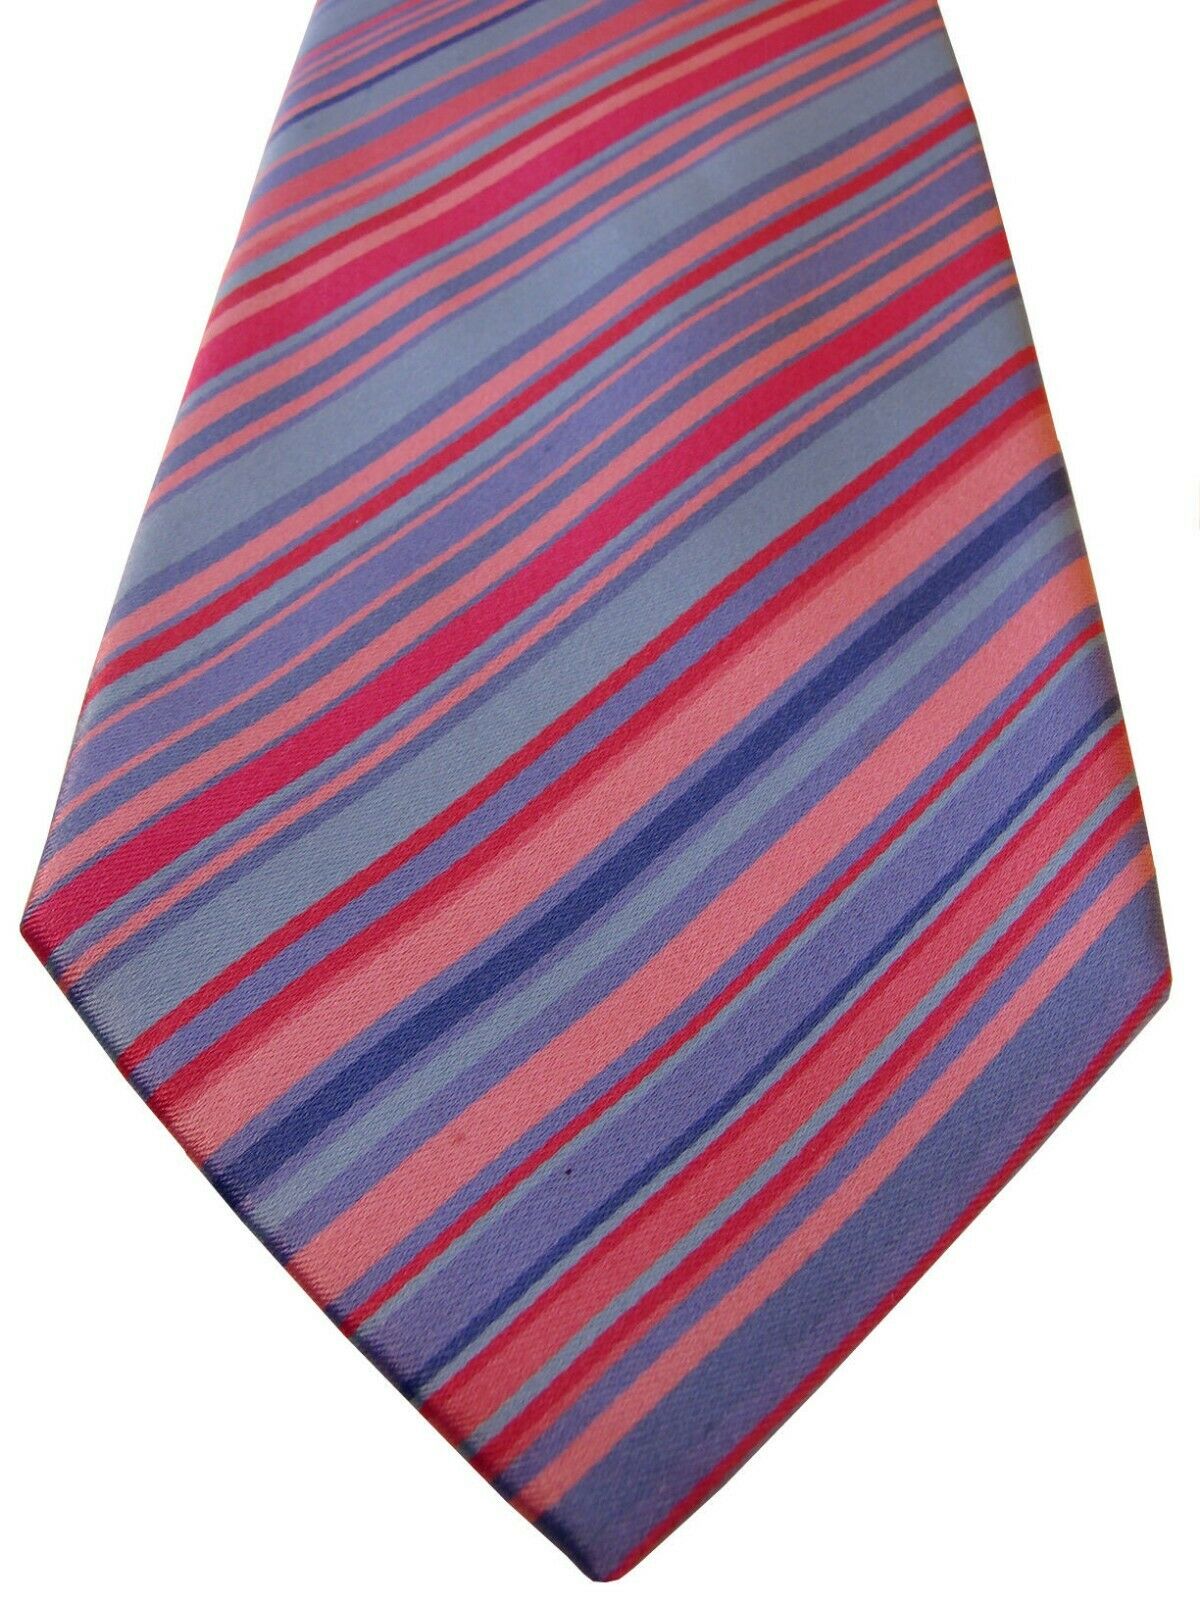 TM LEWIN Mens Tie Pink & Blue Stripes - Brandinity